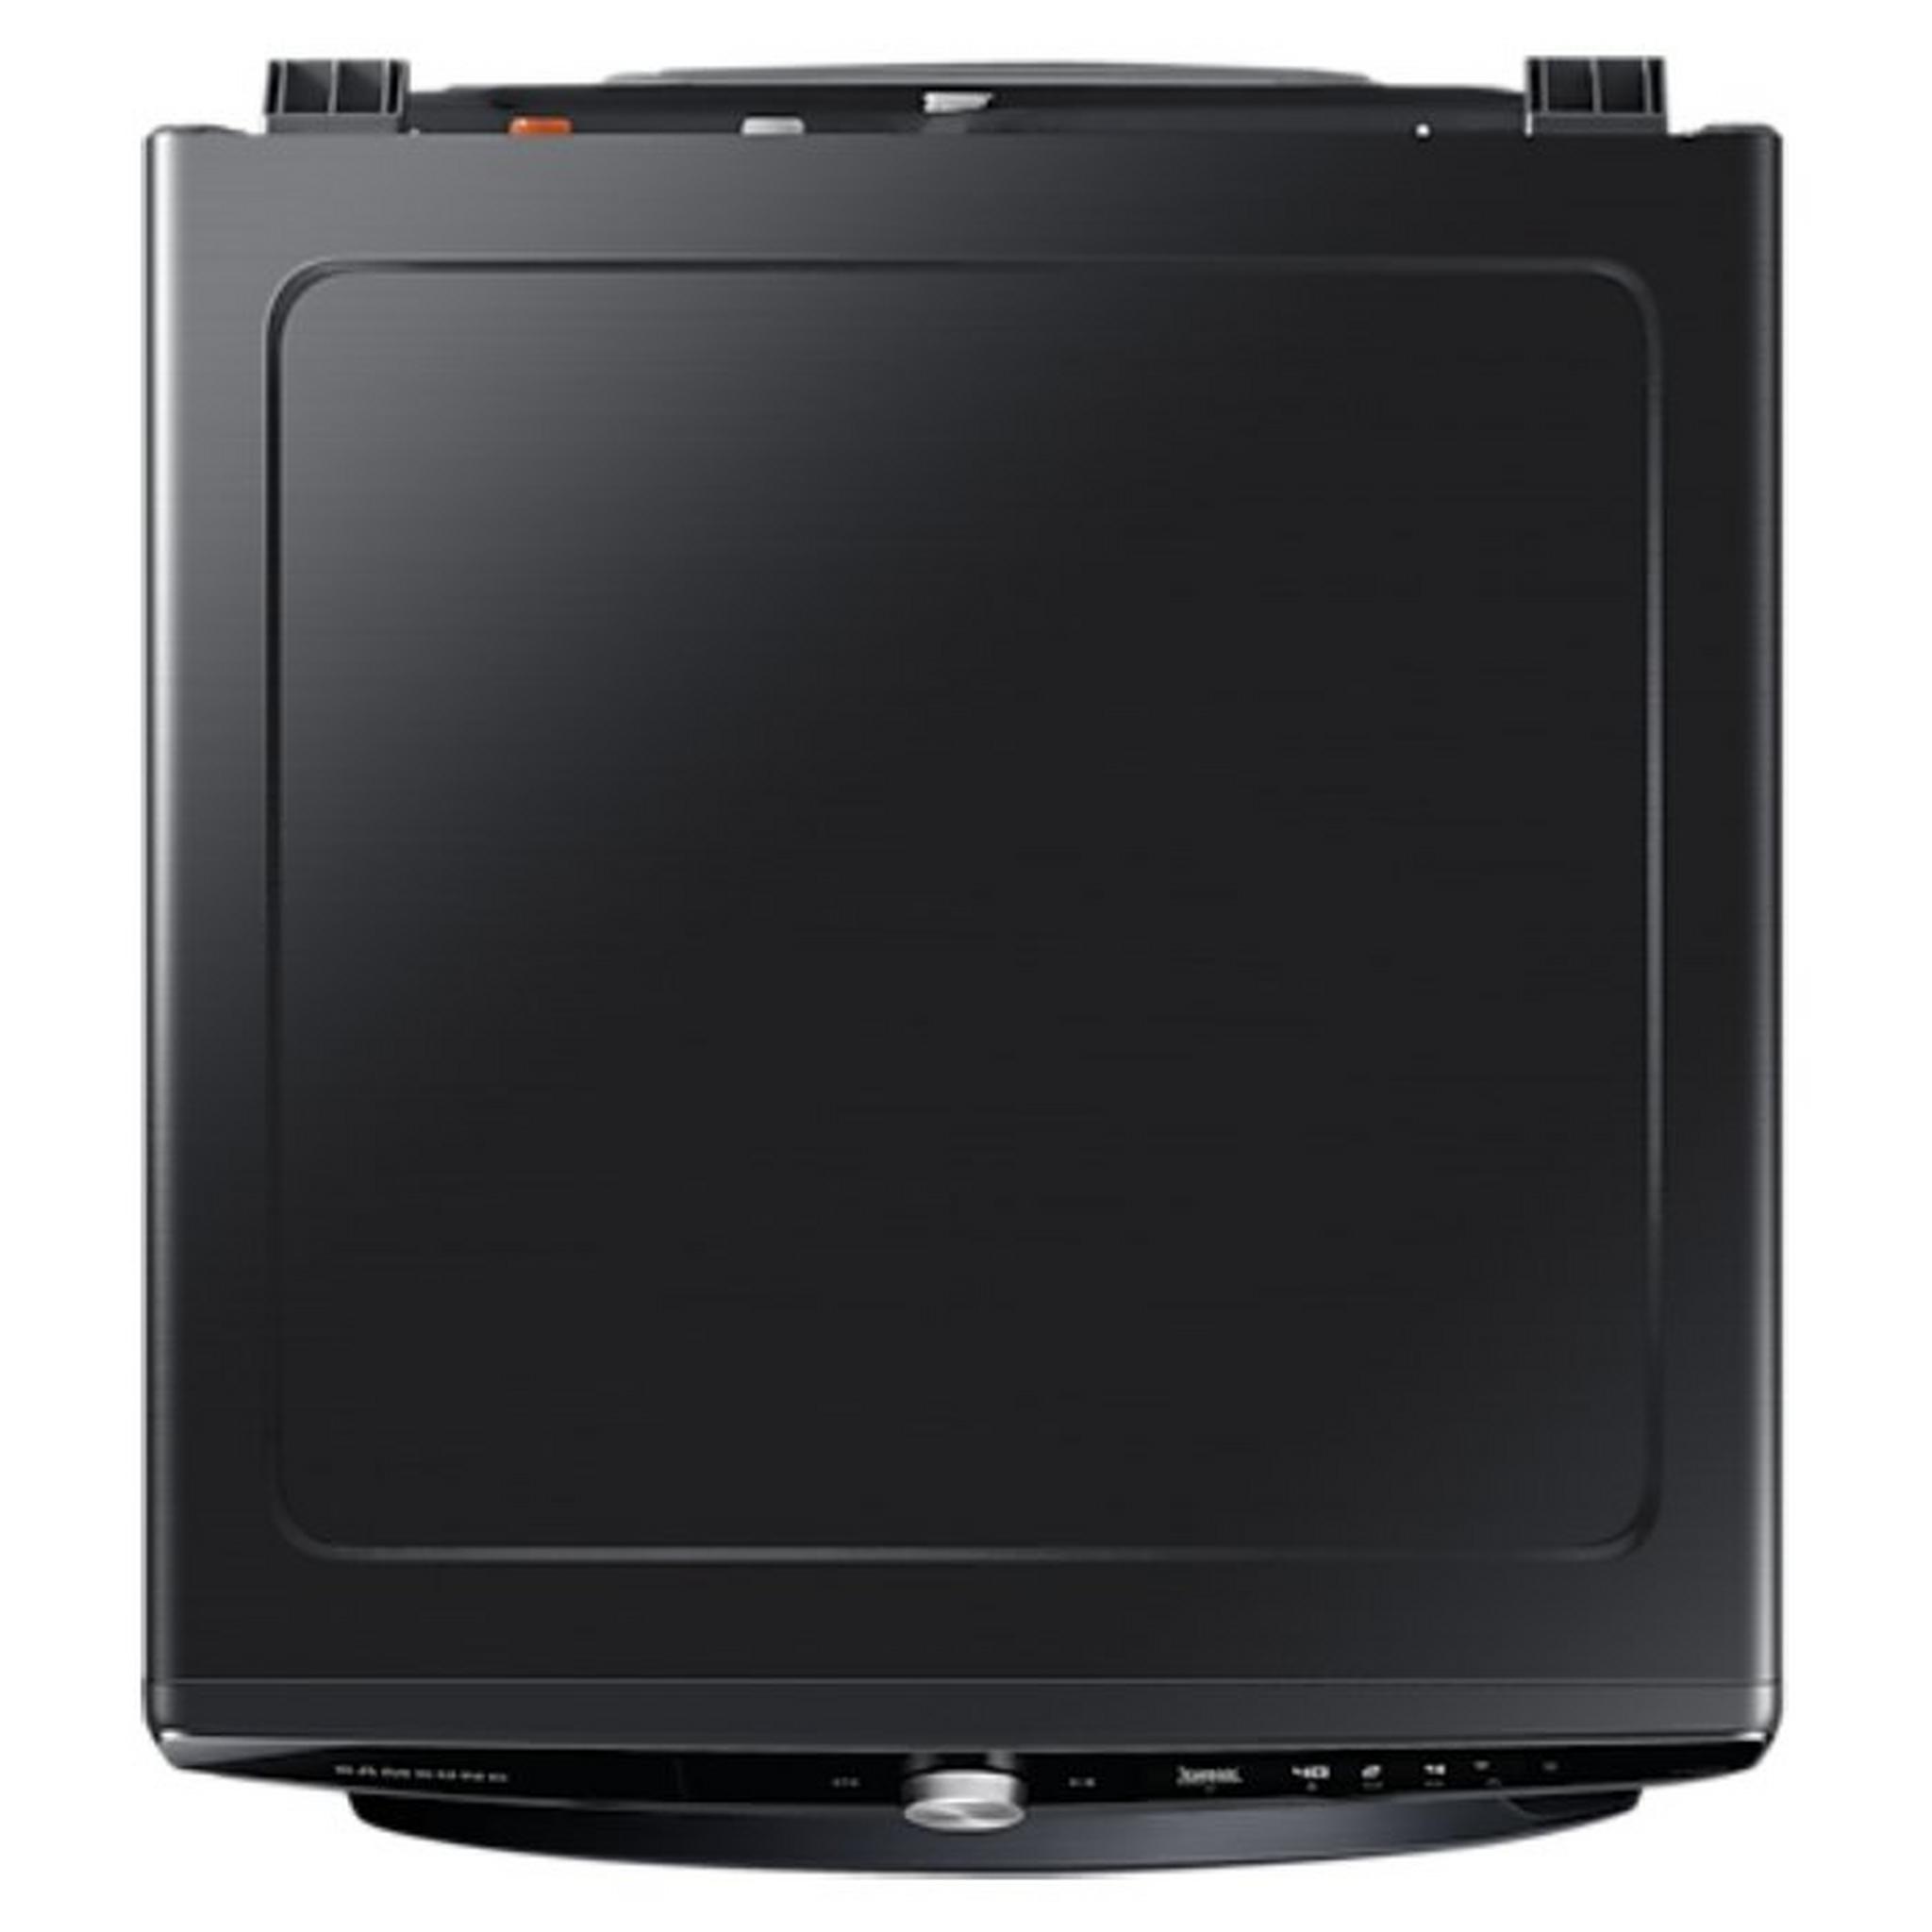 Samsung Washer Front Load 21Kg  (WF21T6300GV) Black